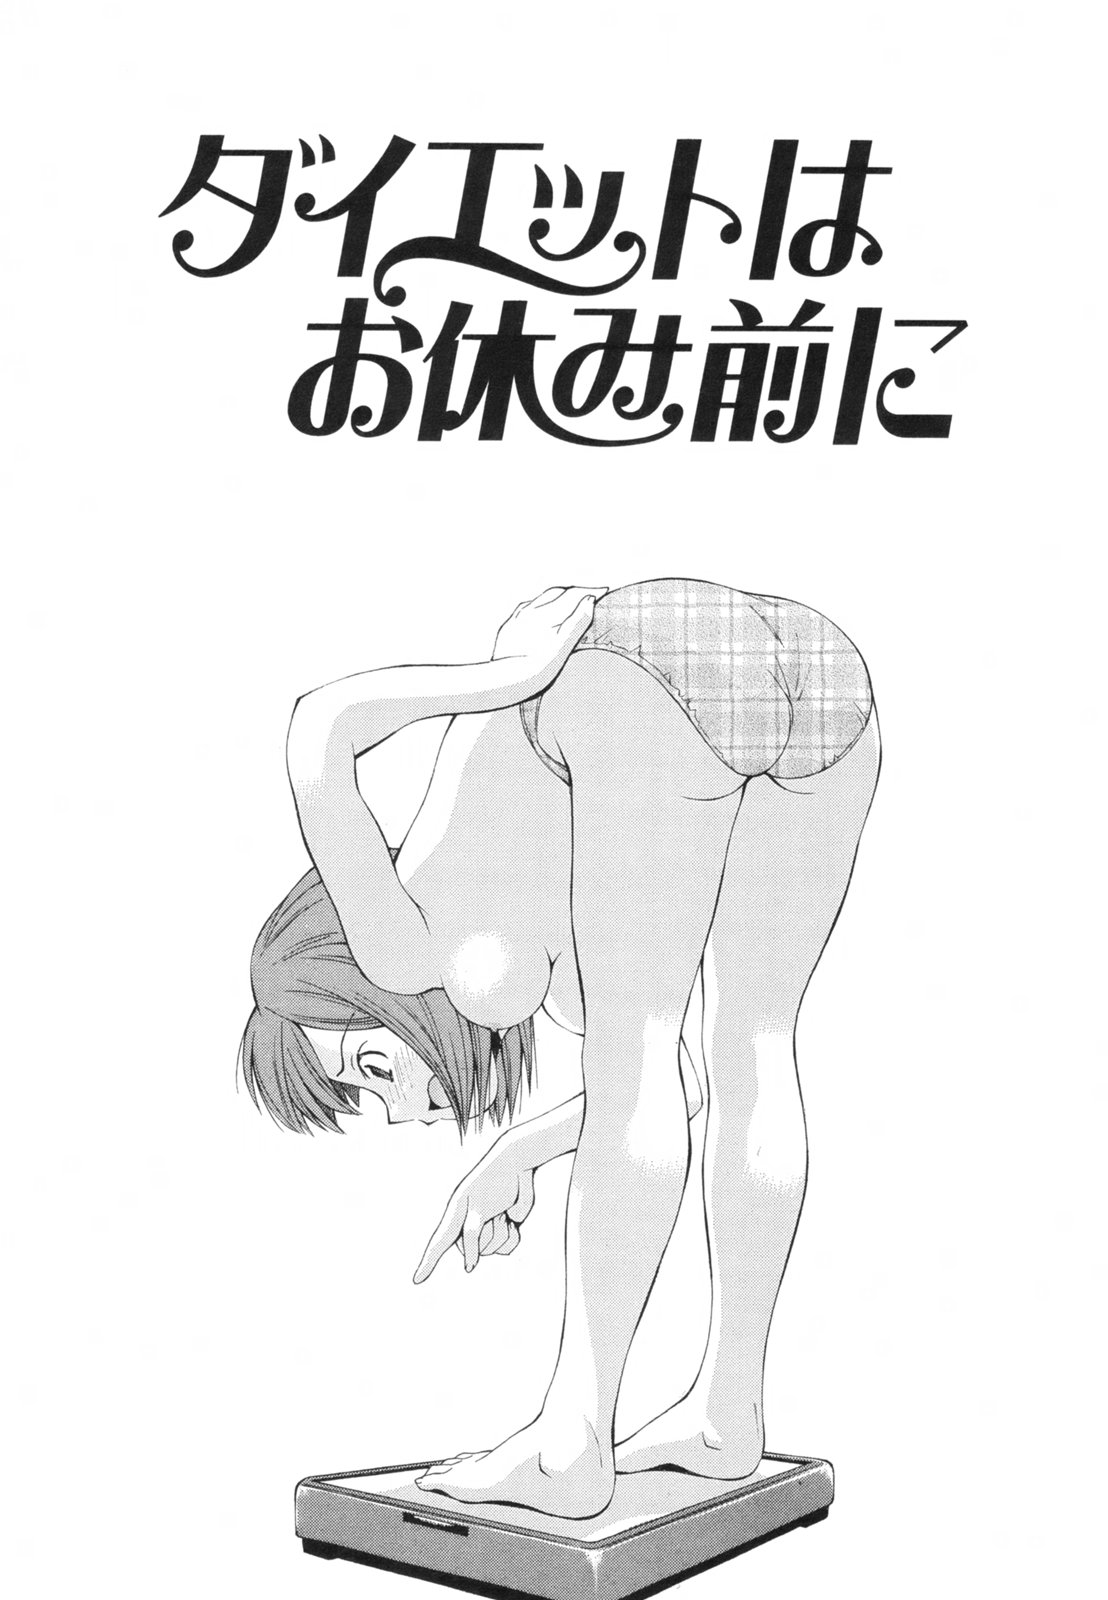 [Ryoumoto Hatsumi] Renai Kagaku Jikken - A Scientific Experiment for Love [嶺本八美] 恋愛かがく実験